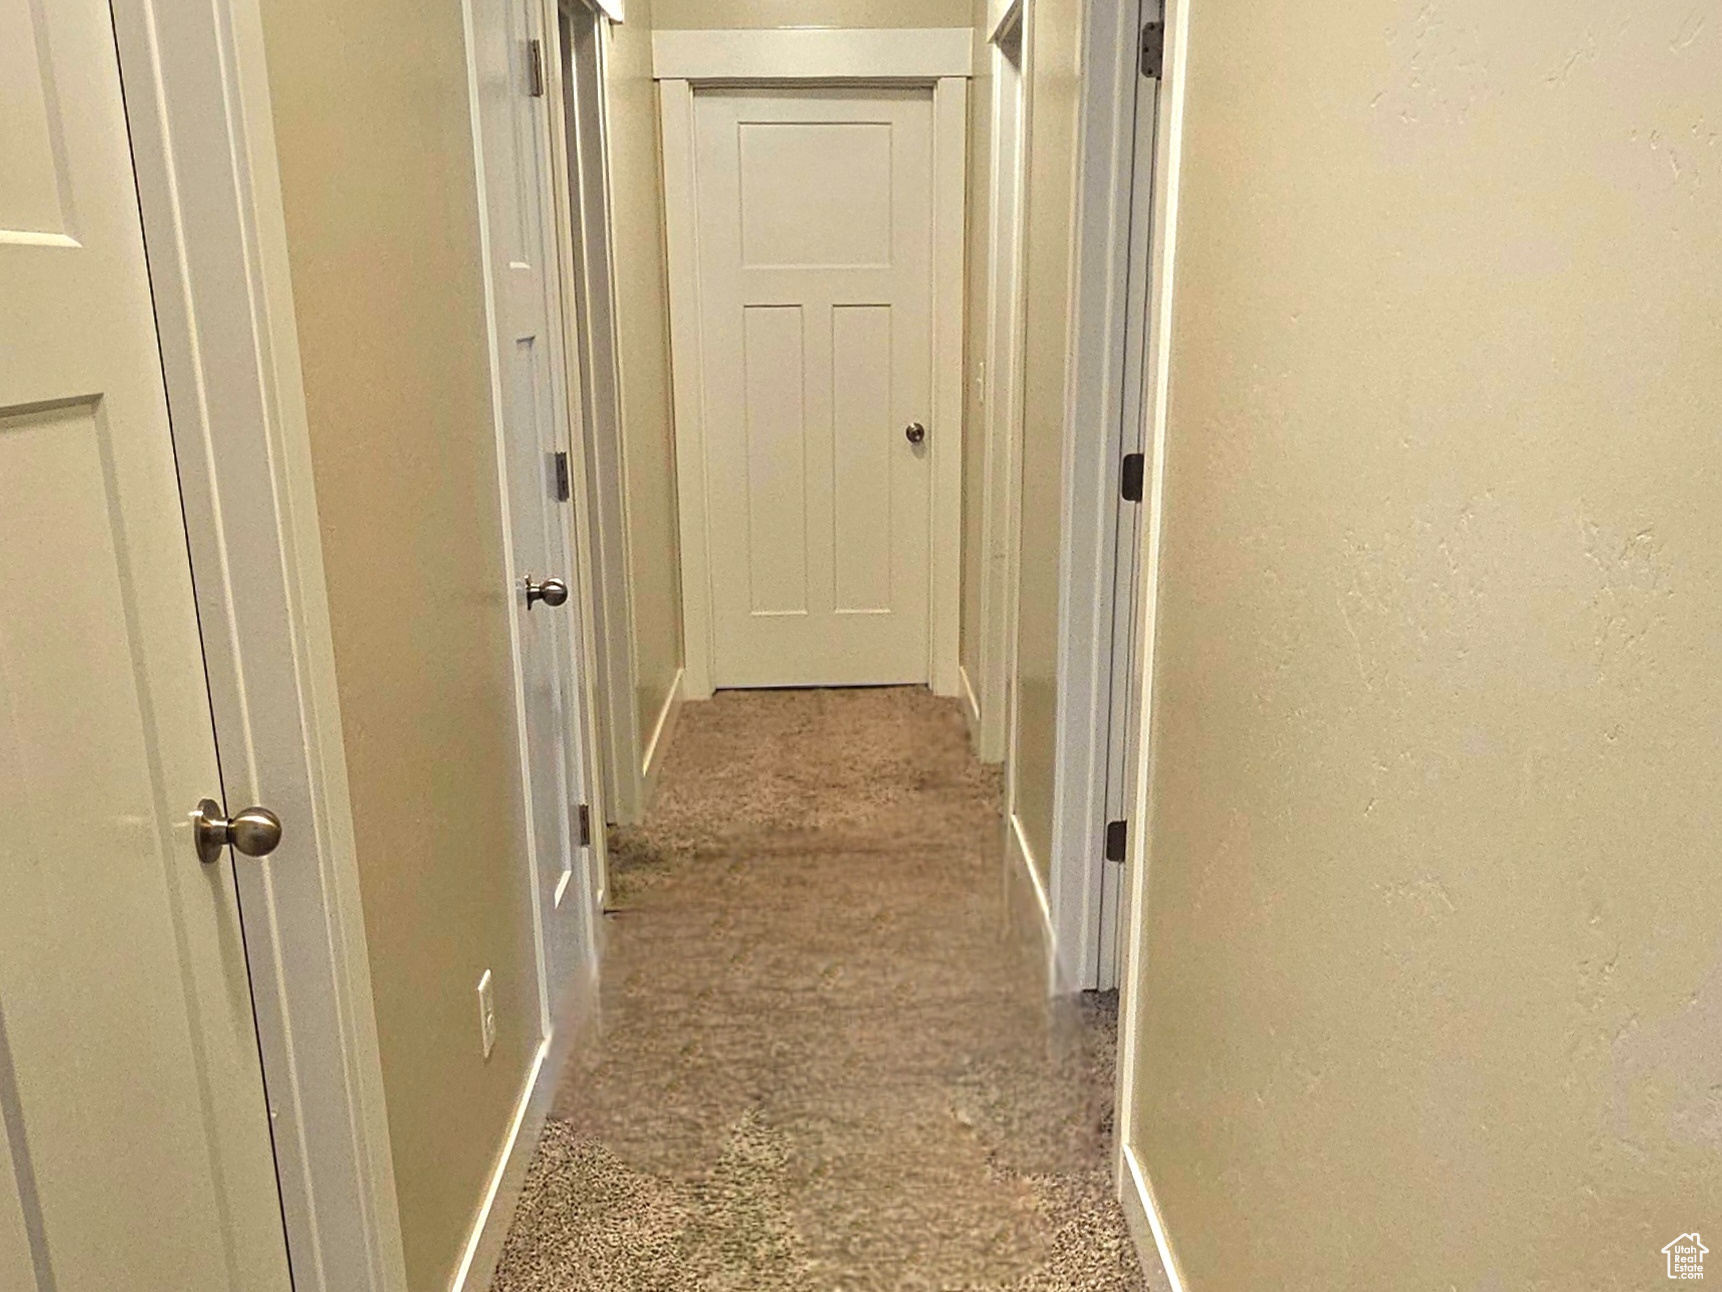 Corridor with carpet flooring